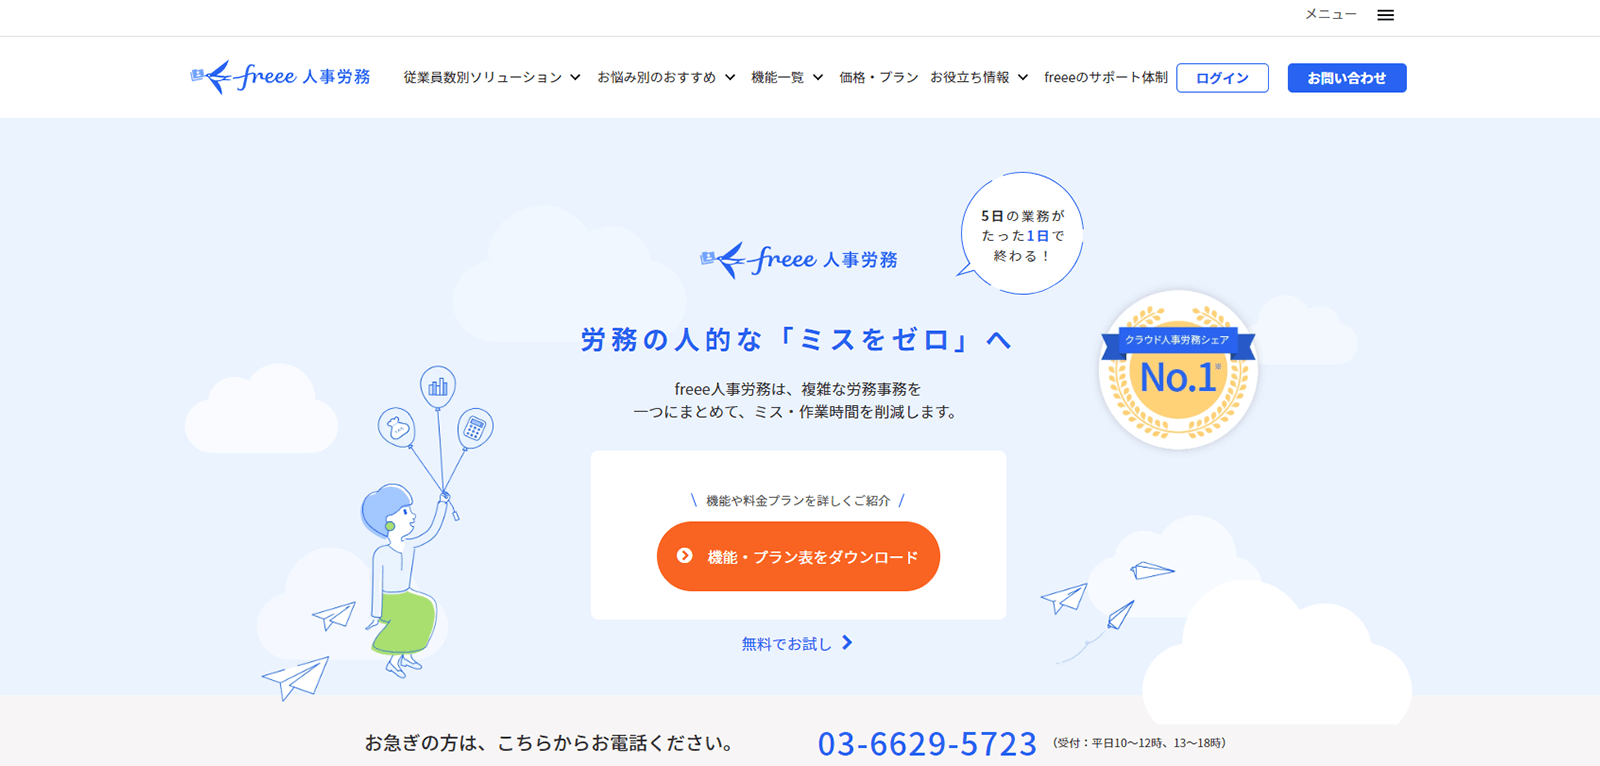 freee 人事労務のwebページ